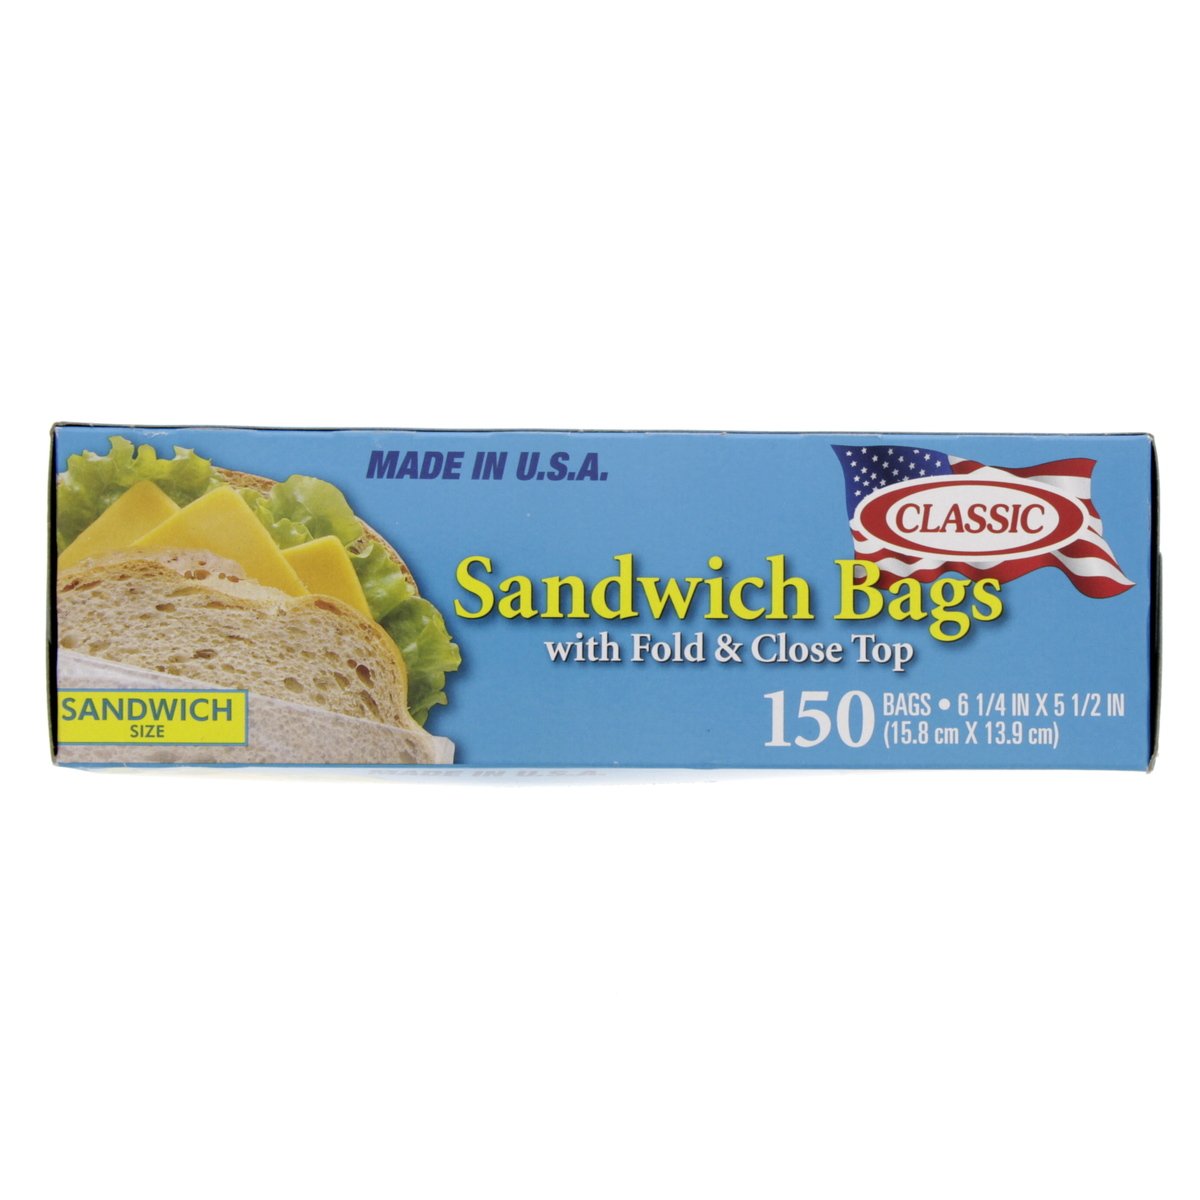 Classic Sandwich Bag With Fold & Close Top Size 15.8 x 13.9cm 150pcs